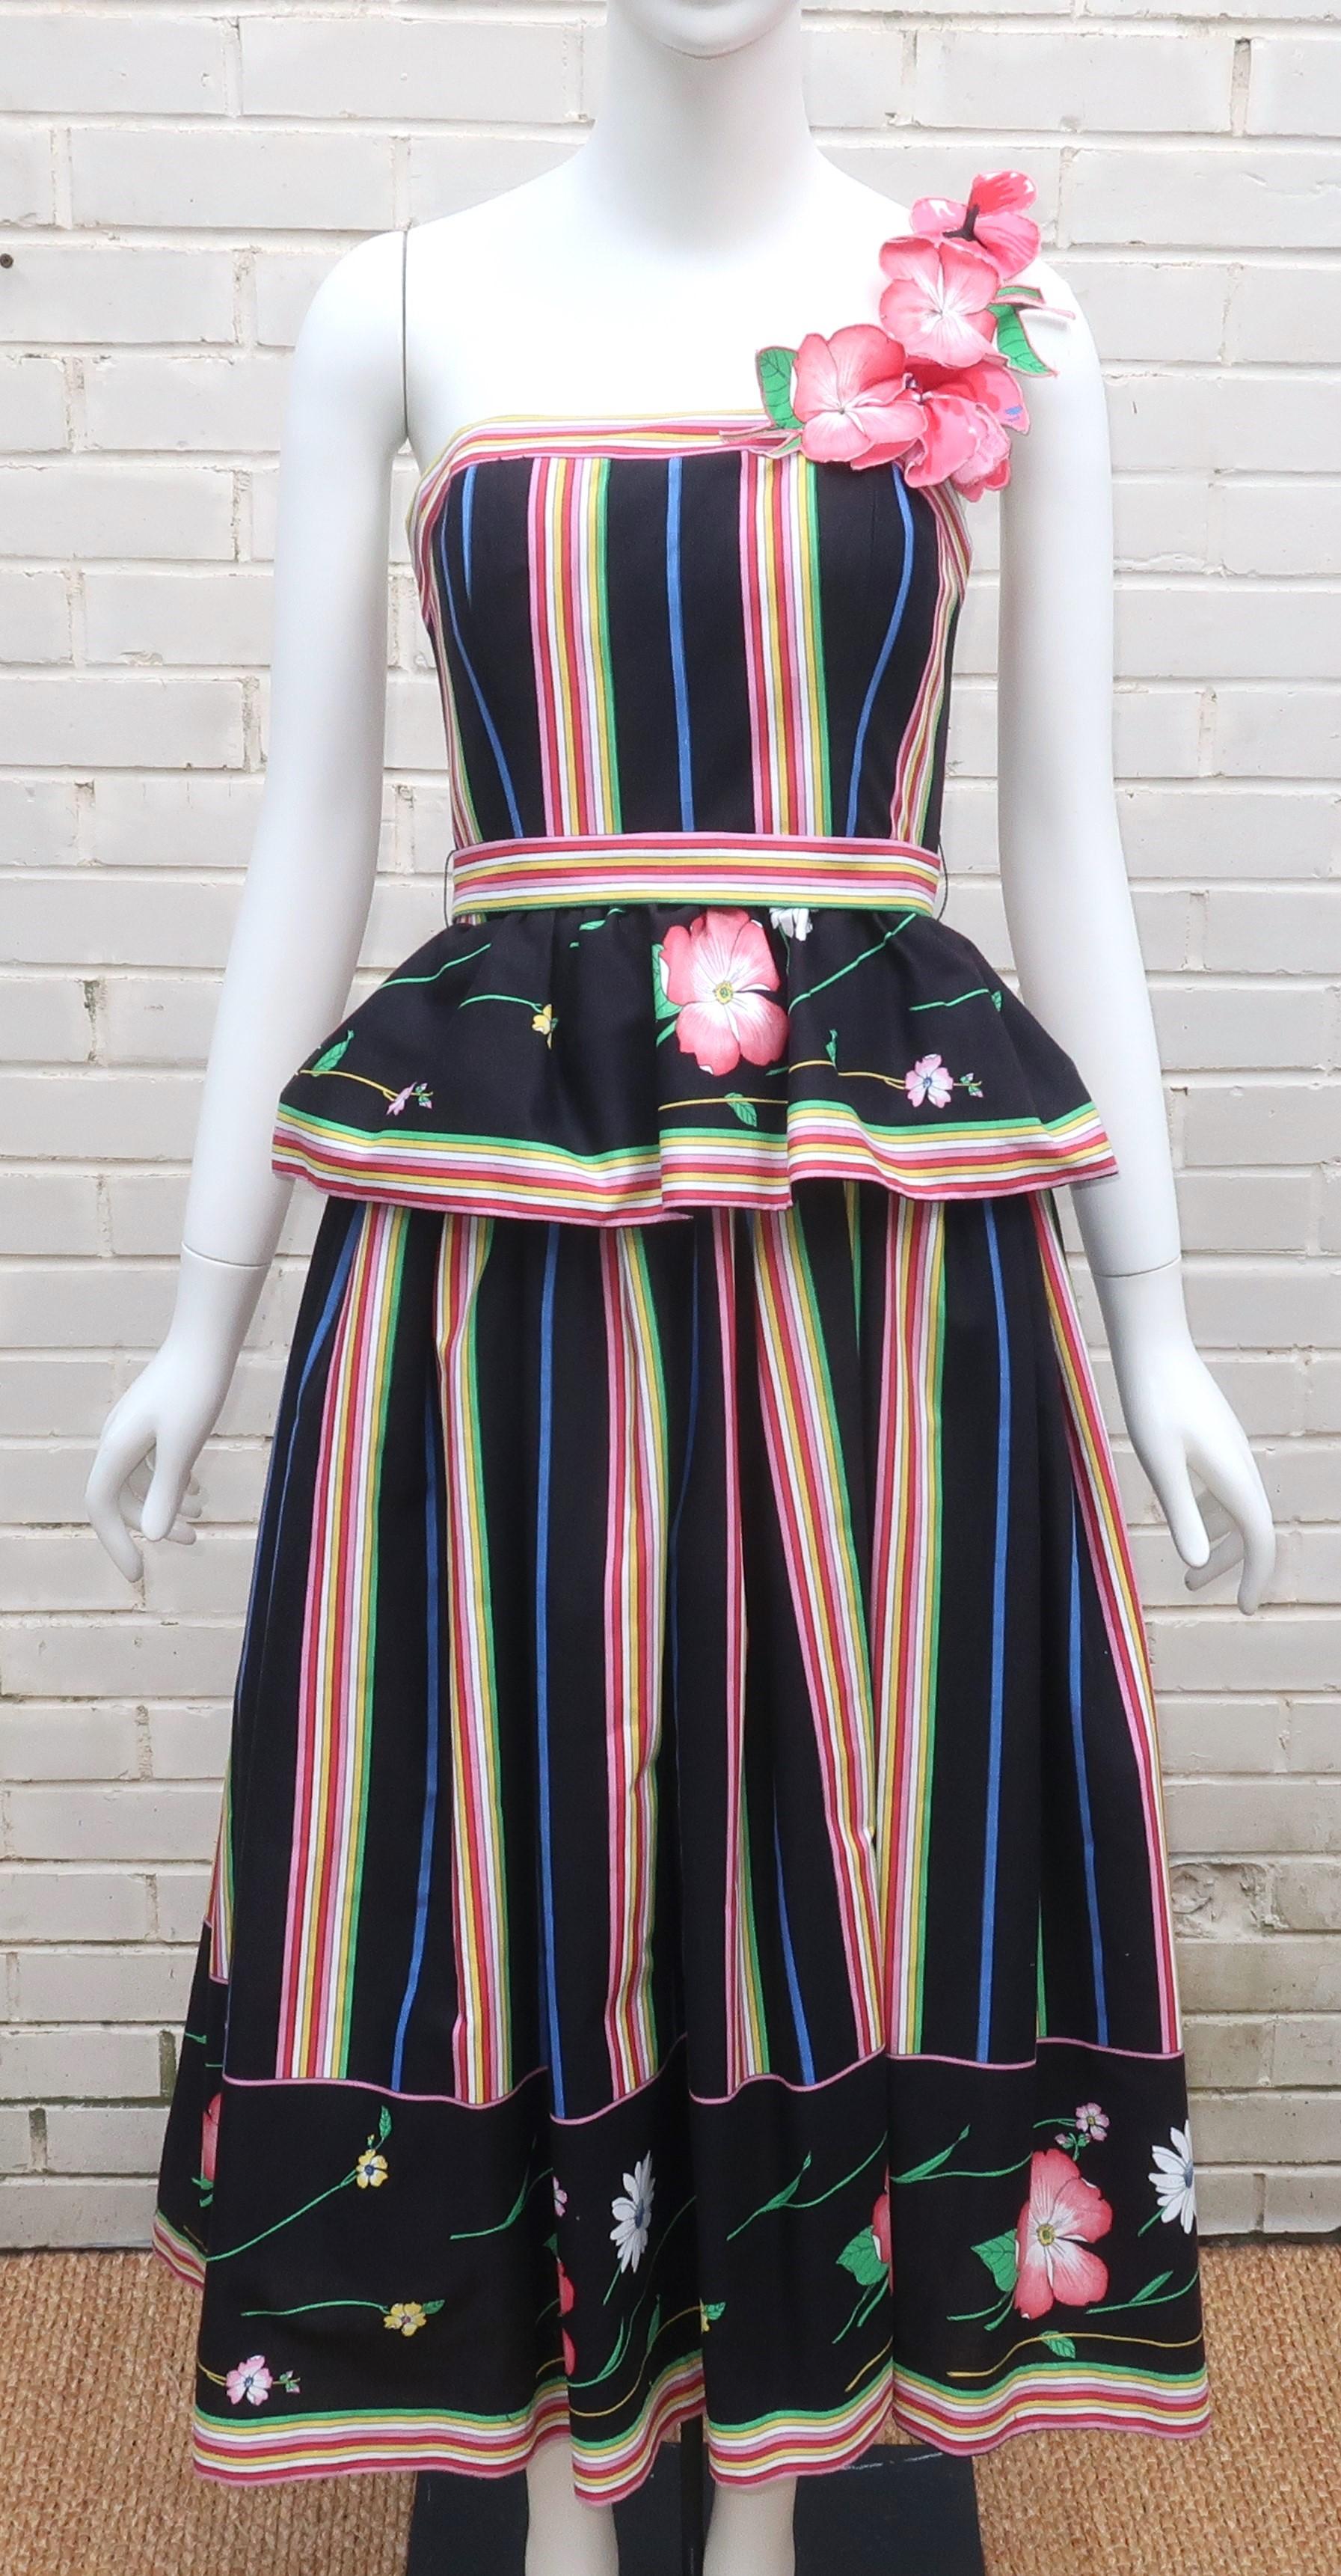 Robe de soleil des années 1970 en coton poli, imprimée de fleurs et de rayures aux couleurs gaies (rose, rouge, jaune, vert et bleu) sur fond noir.  Le modèle à épaulement unique est doté d'une taille péplum et d'une jupe ample doublée d'une